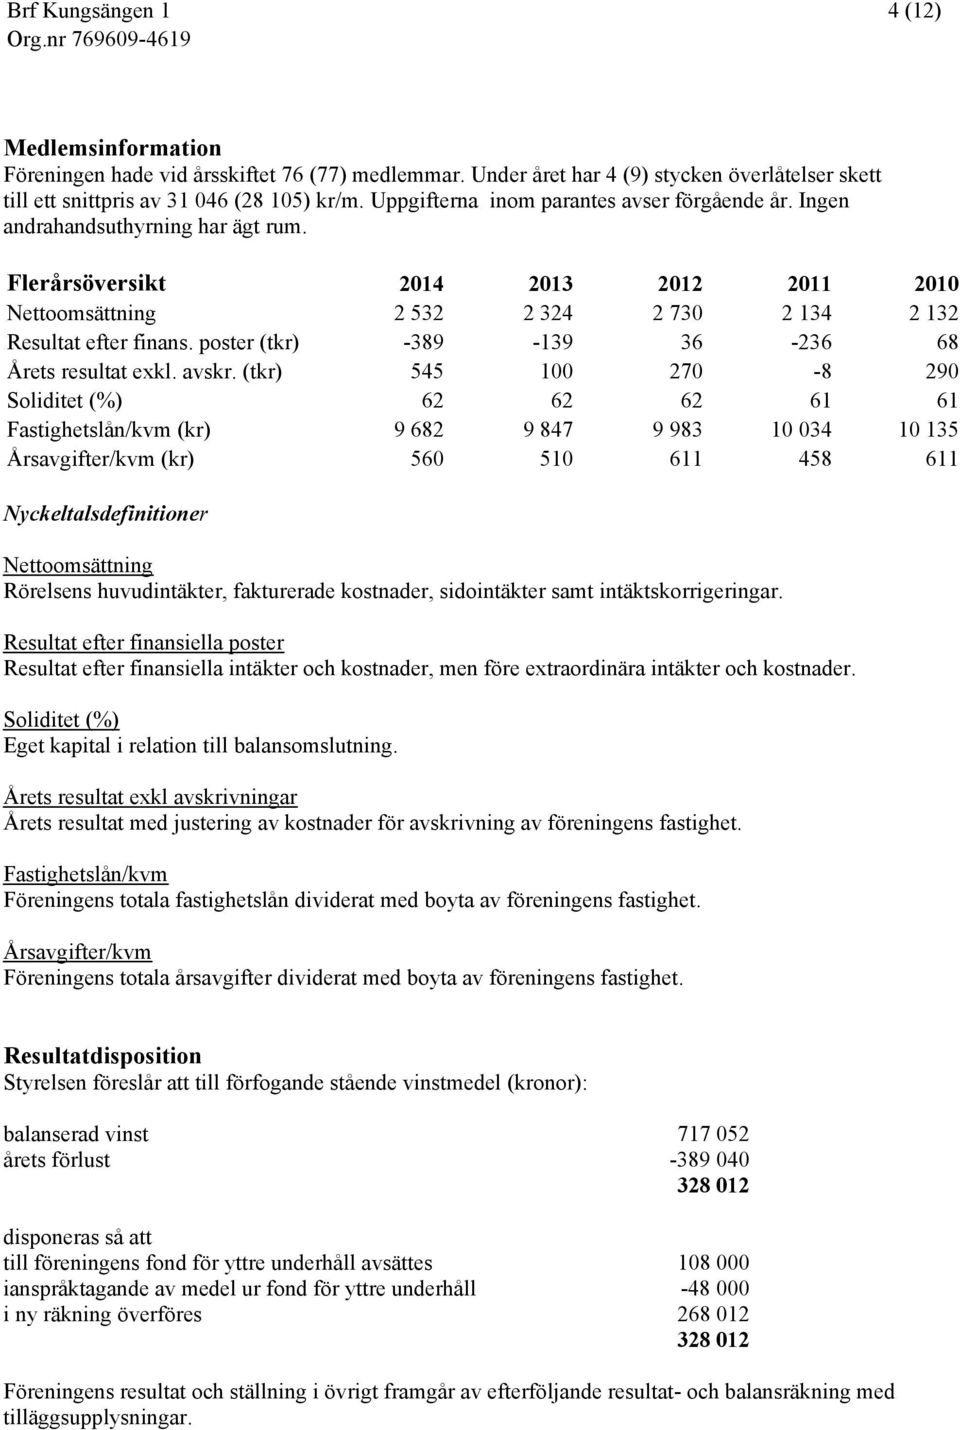 poster (tkr) -389-139 36-236 68 Årets resultat exkl. avskr.